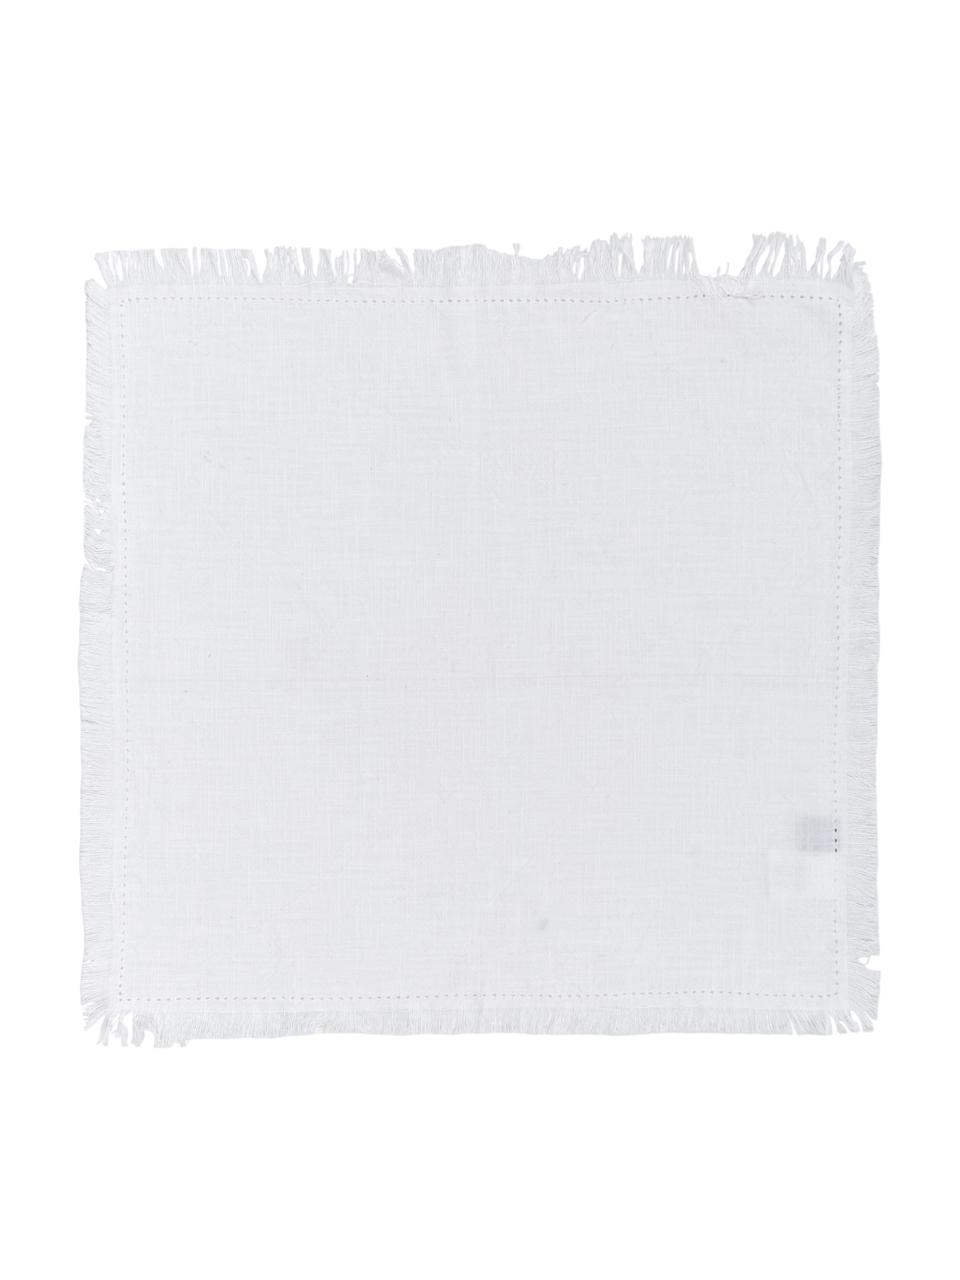 Baumwoll-Servietten Hilma mit Fransen, 2 Stück, 100% Baumwolle, Weiß, 45 x 45 cm